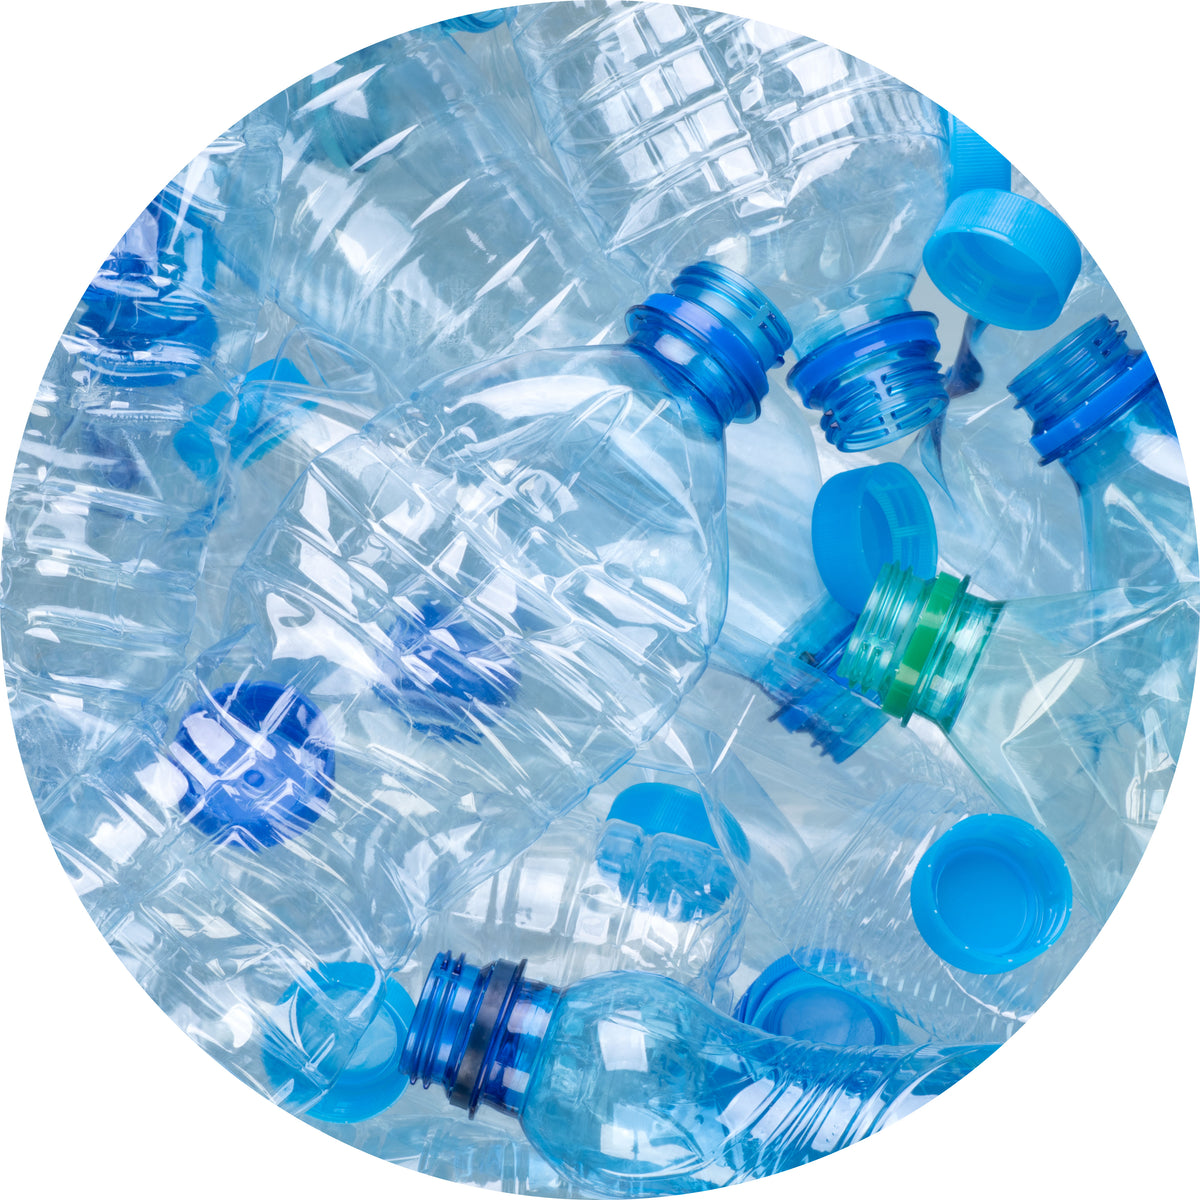 Pile of blue plastic bottles. Allta